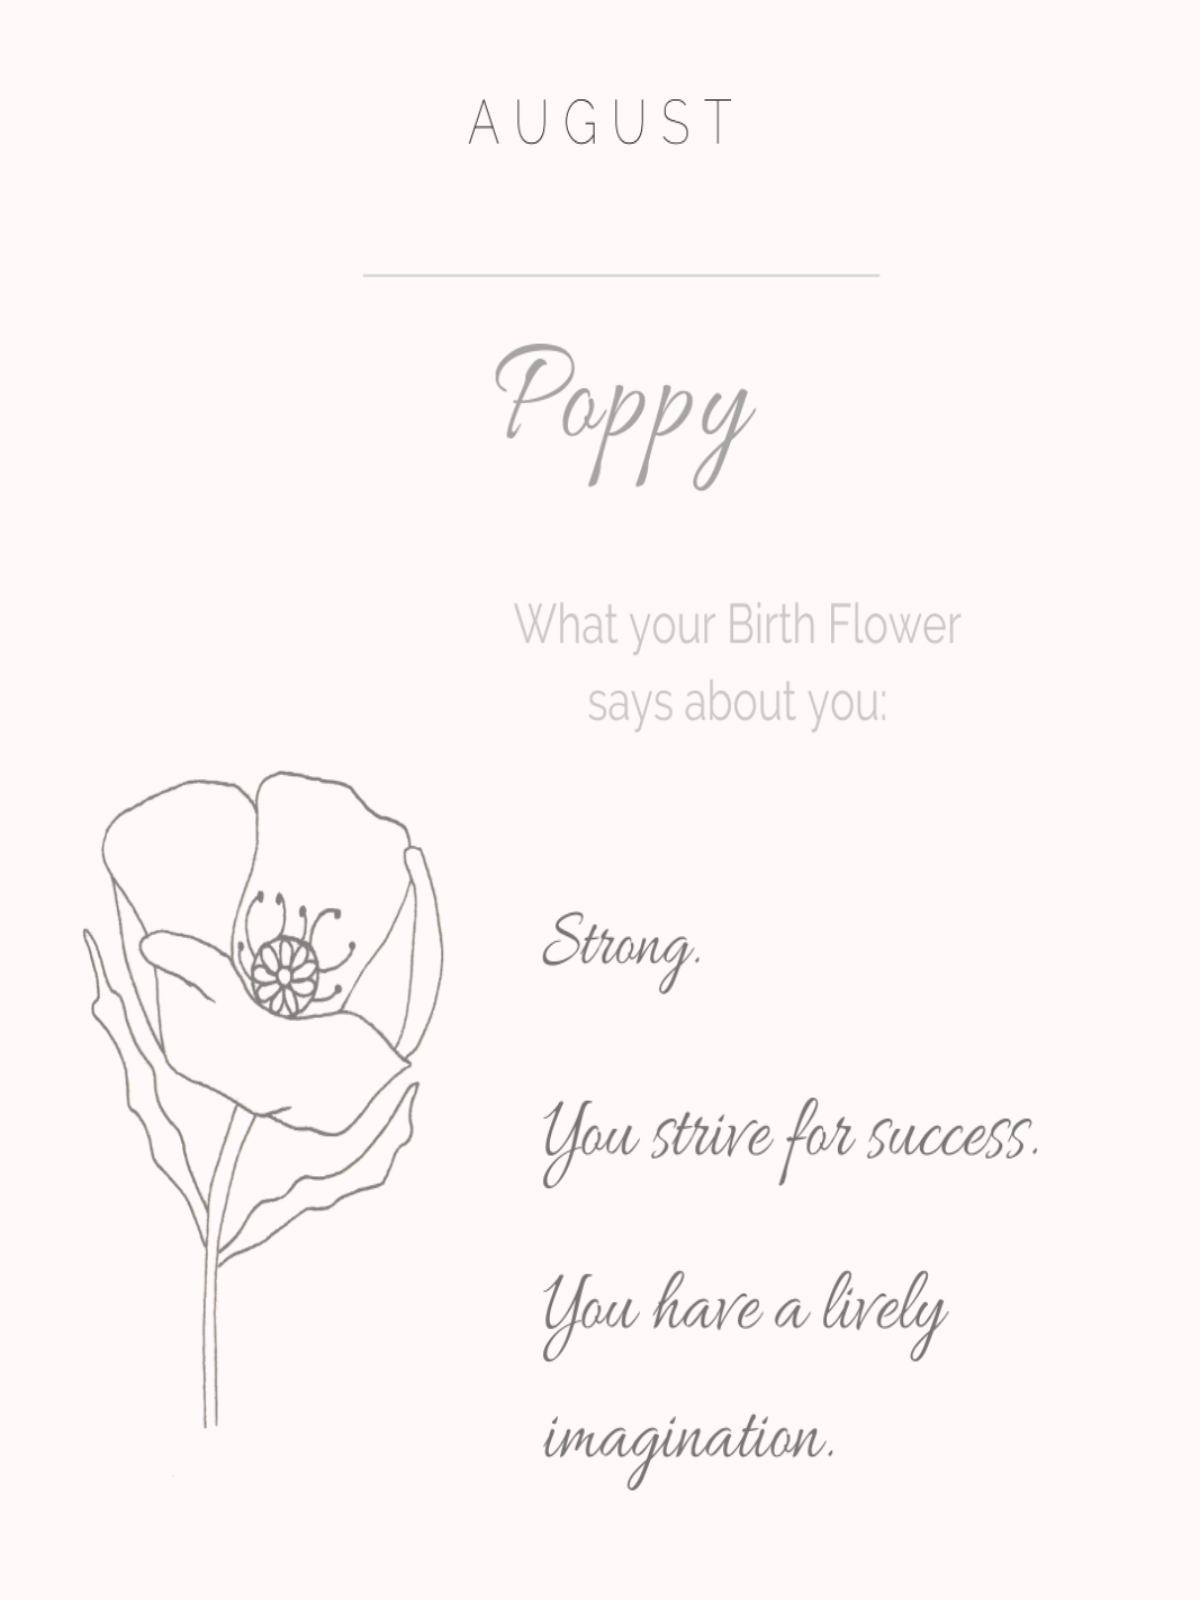 Poppy - August Birth Flower